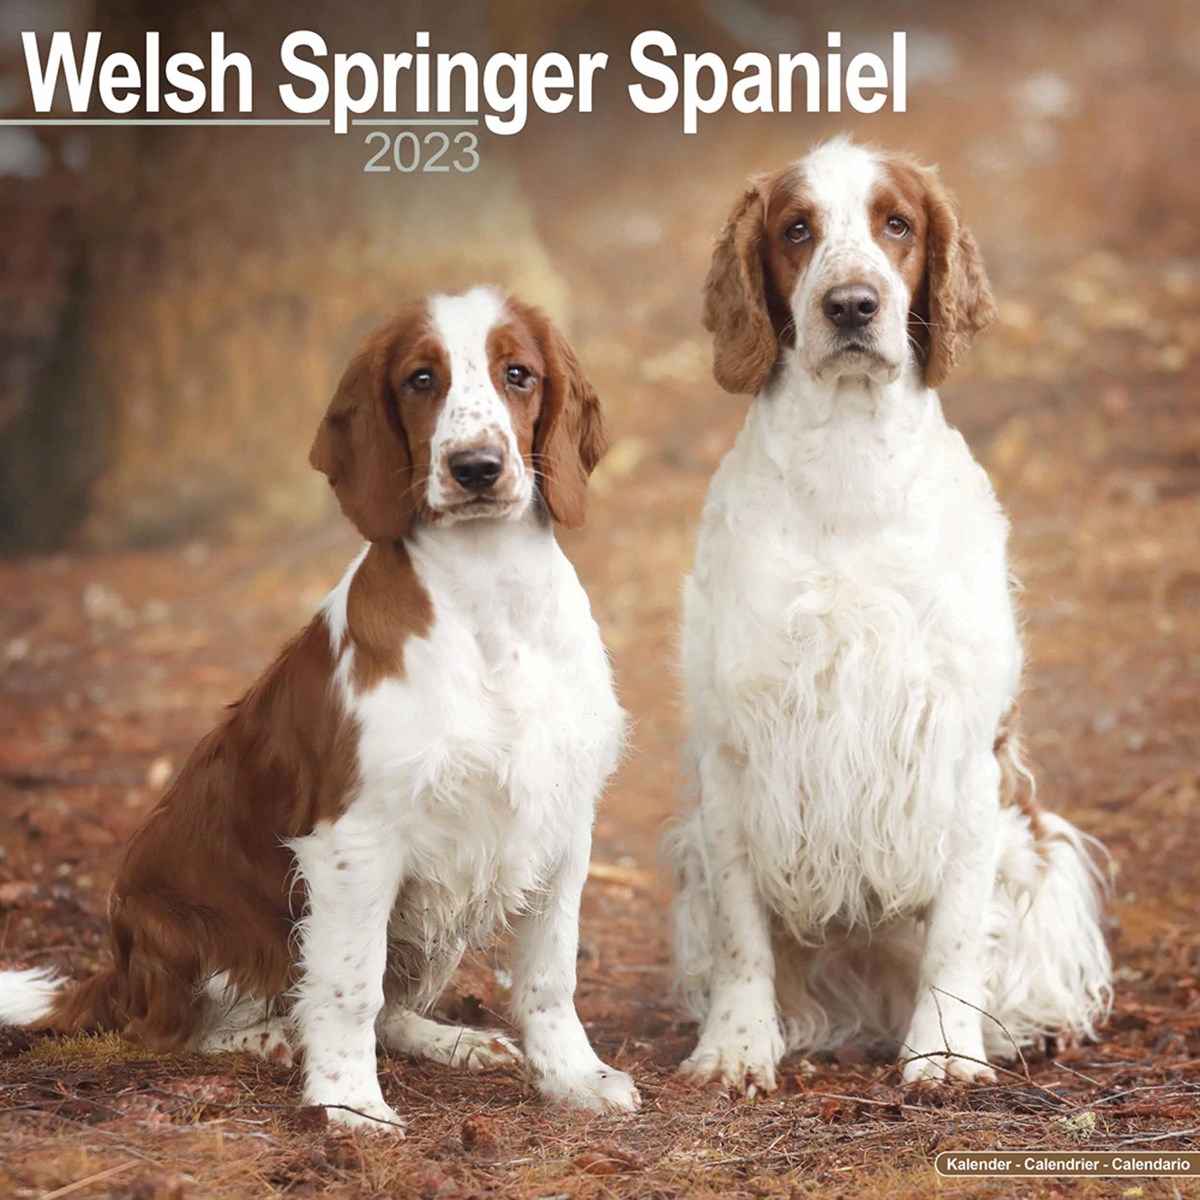 Welsh Springer Spaniel 2023 Calendars